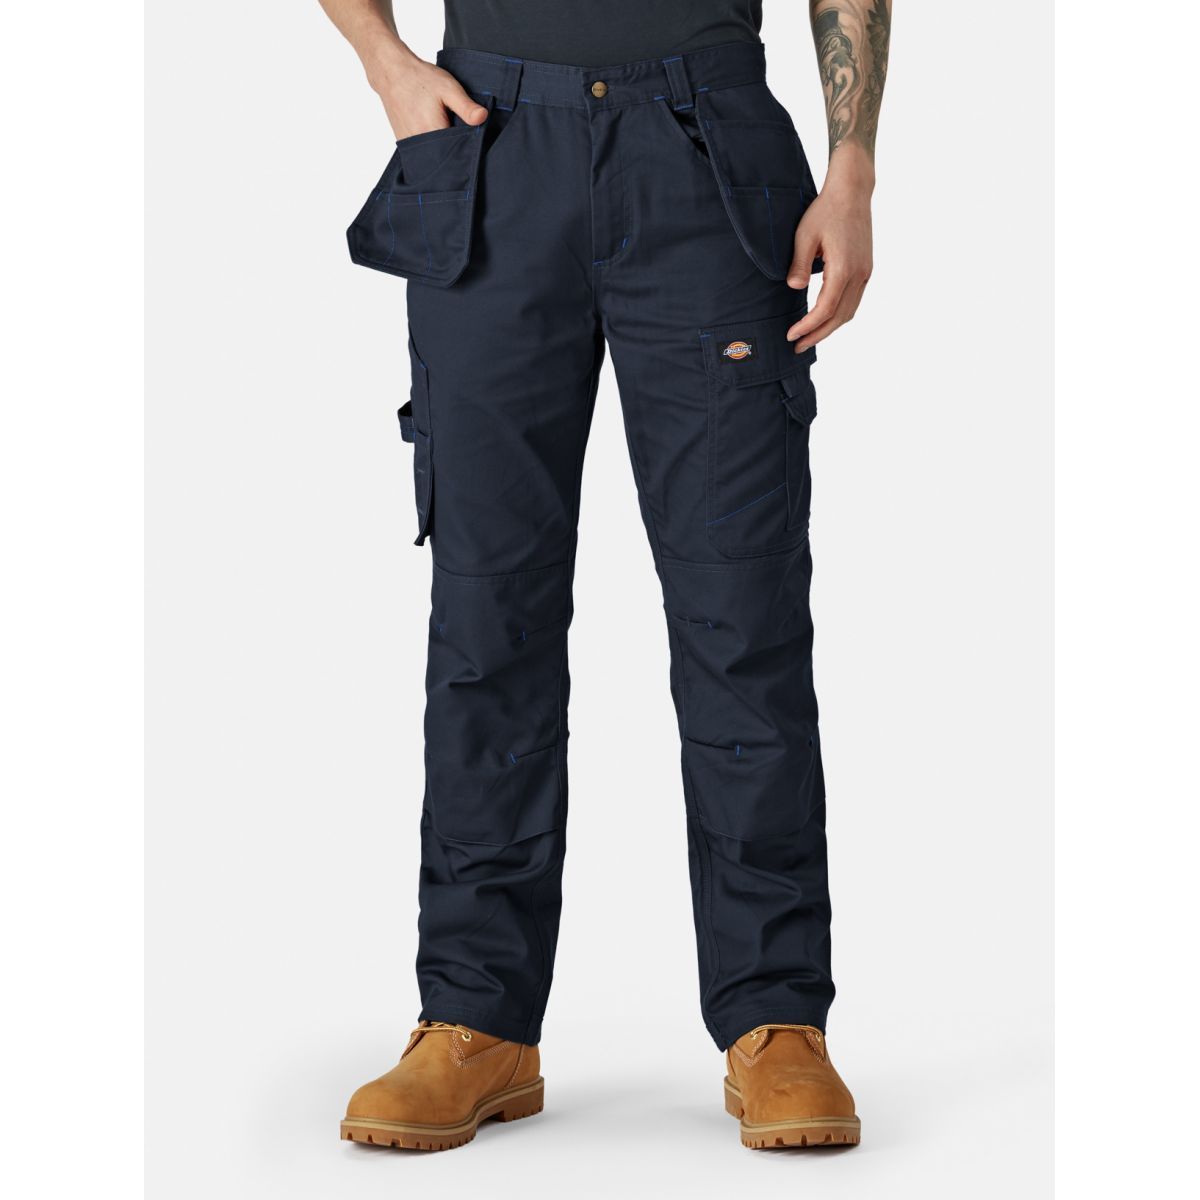 Pantalon Redhawk Pro Bleu marine - Dickies - Taille 36 0